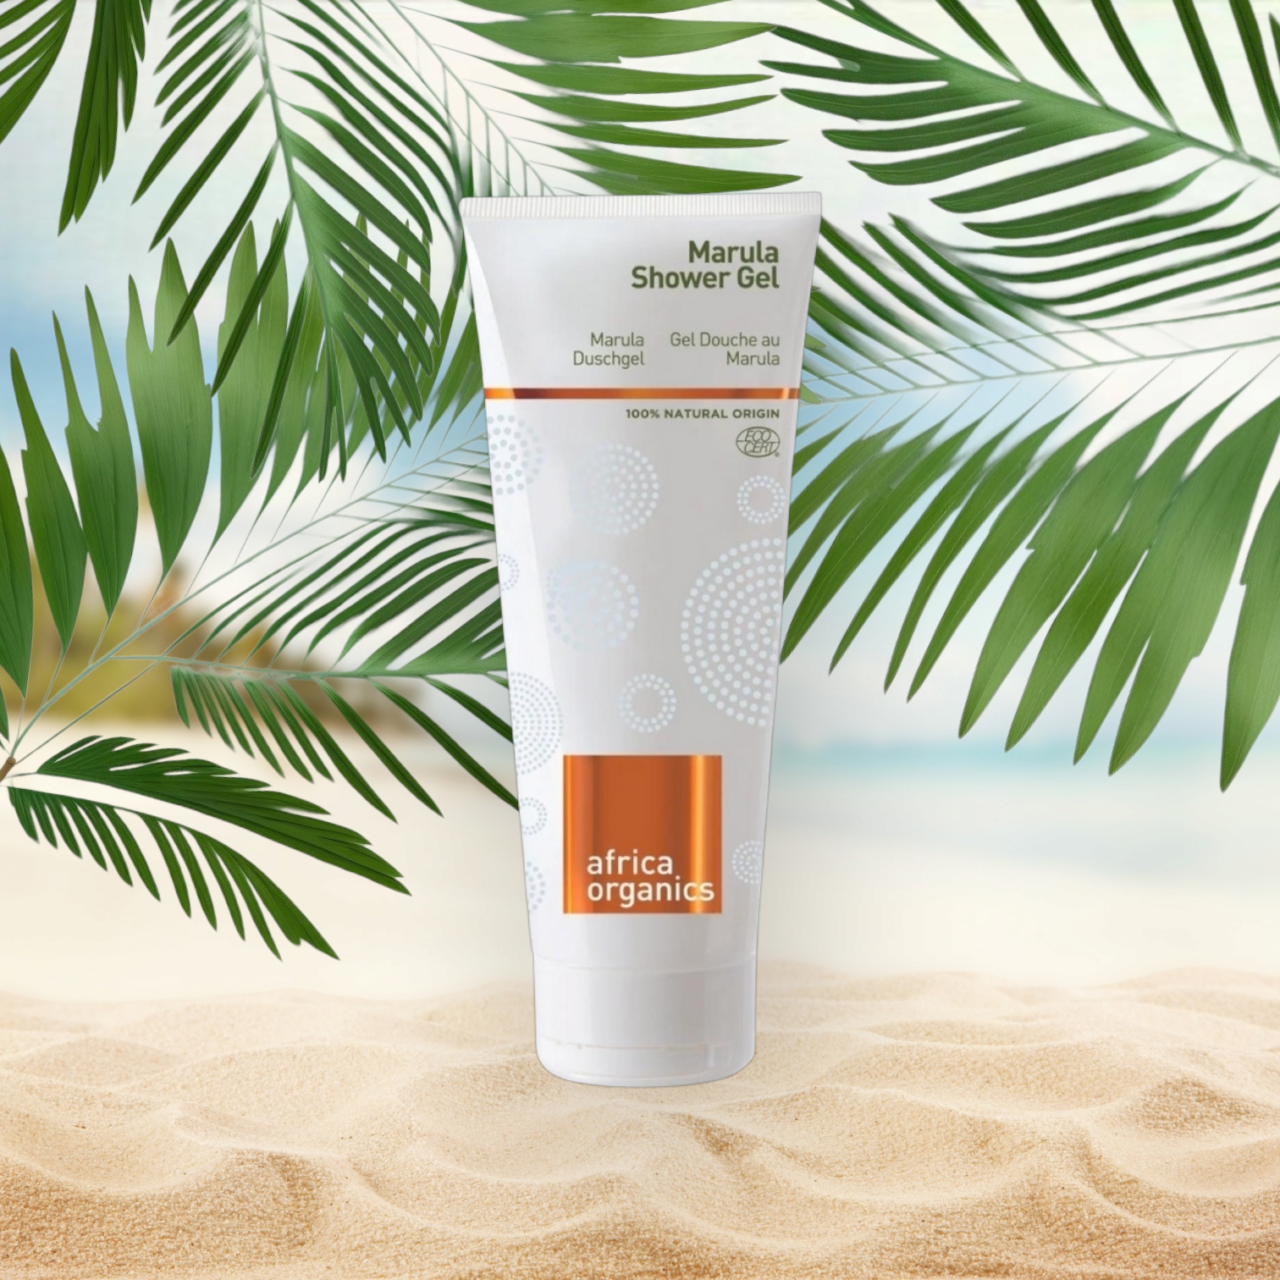 En tube Africa Organics Marula shower gel 210ml på en strand med palmeblade, der fremmer helbred og velvære.